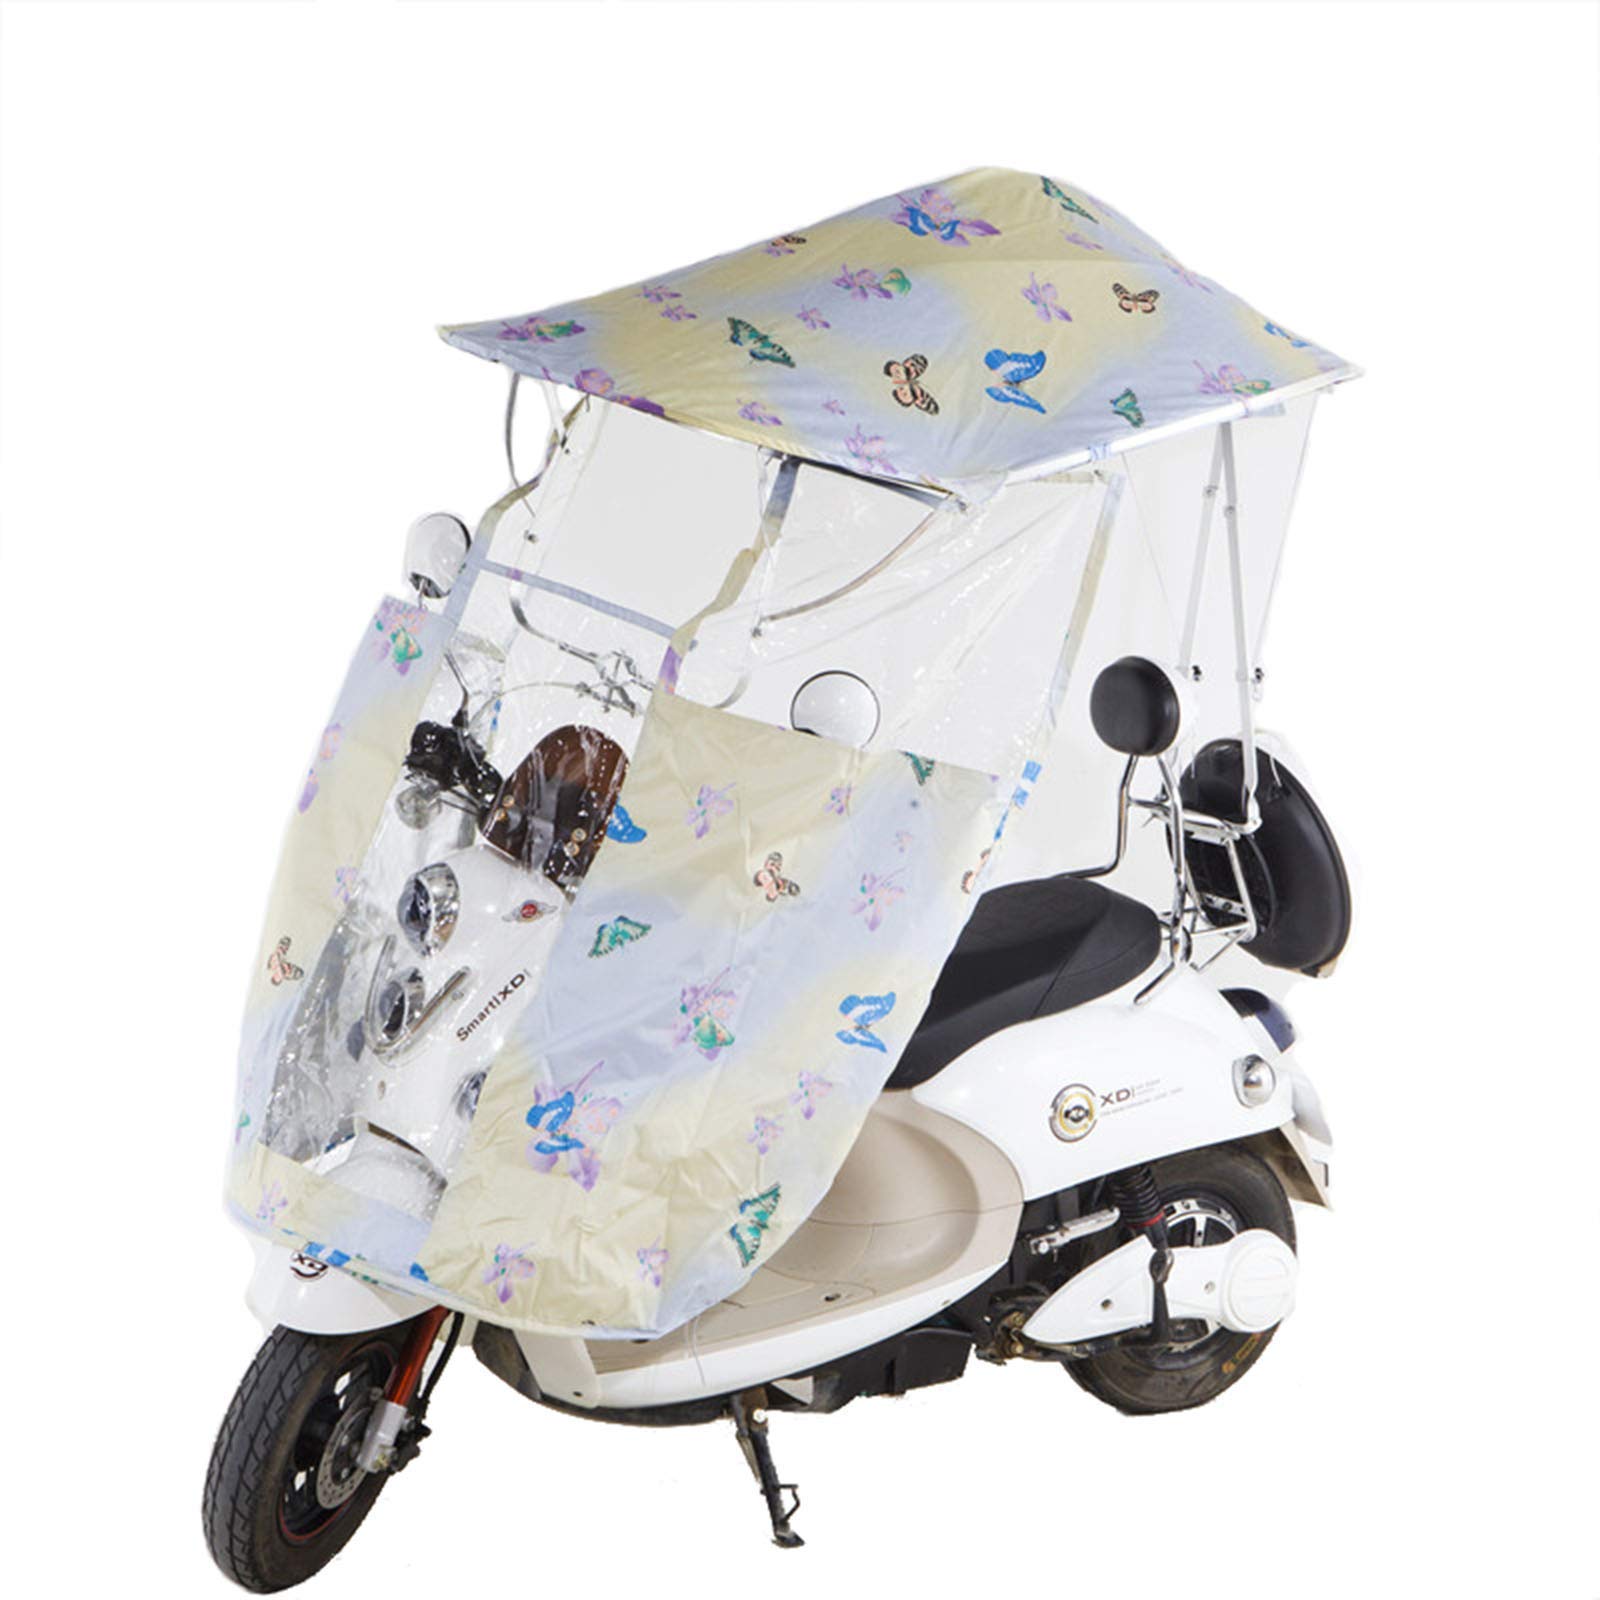 Sonnenschutz für Elektromotorräder, wasserdichte Regenschirmabdeckung für Motorroller, transparente Autoüberdachung zum Schutz vor Wind und Regen vor Sonnenlicht, 5 (6) von WQZStar